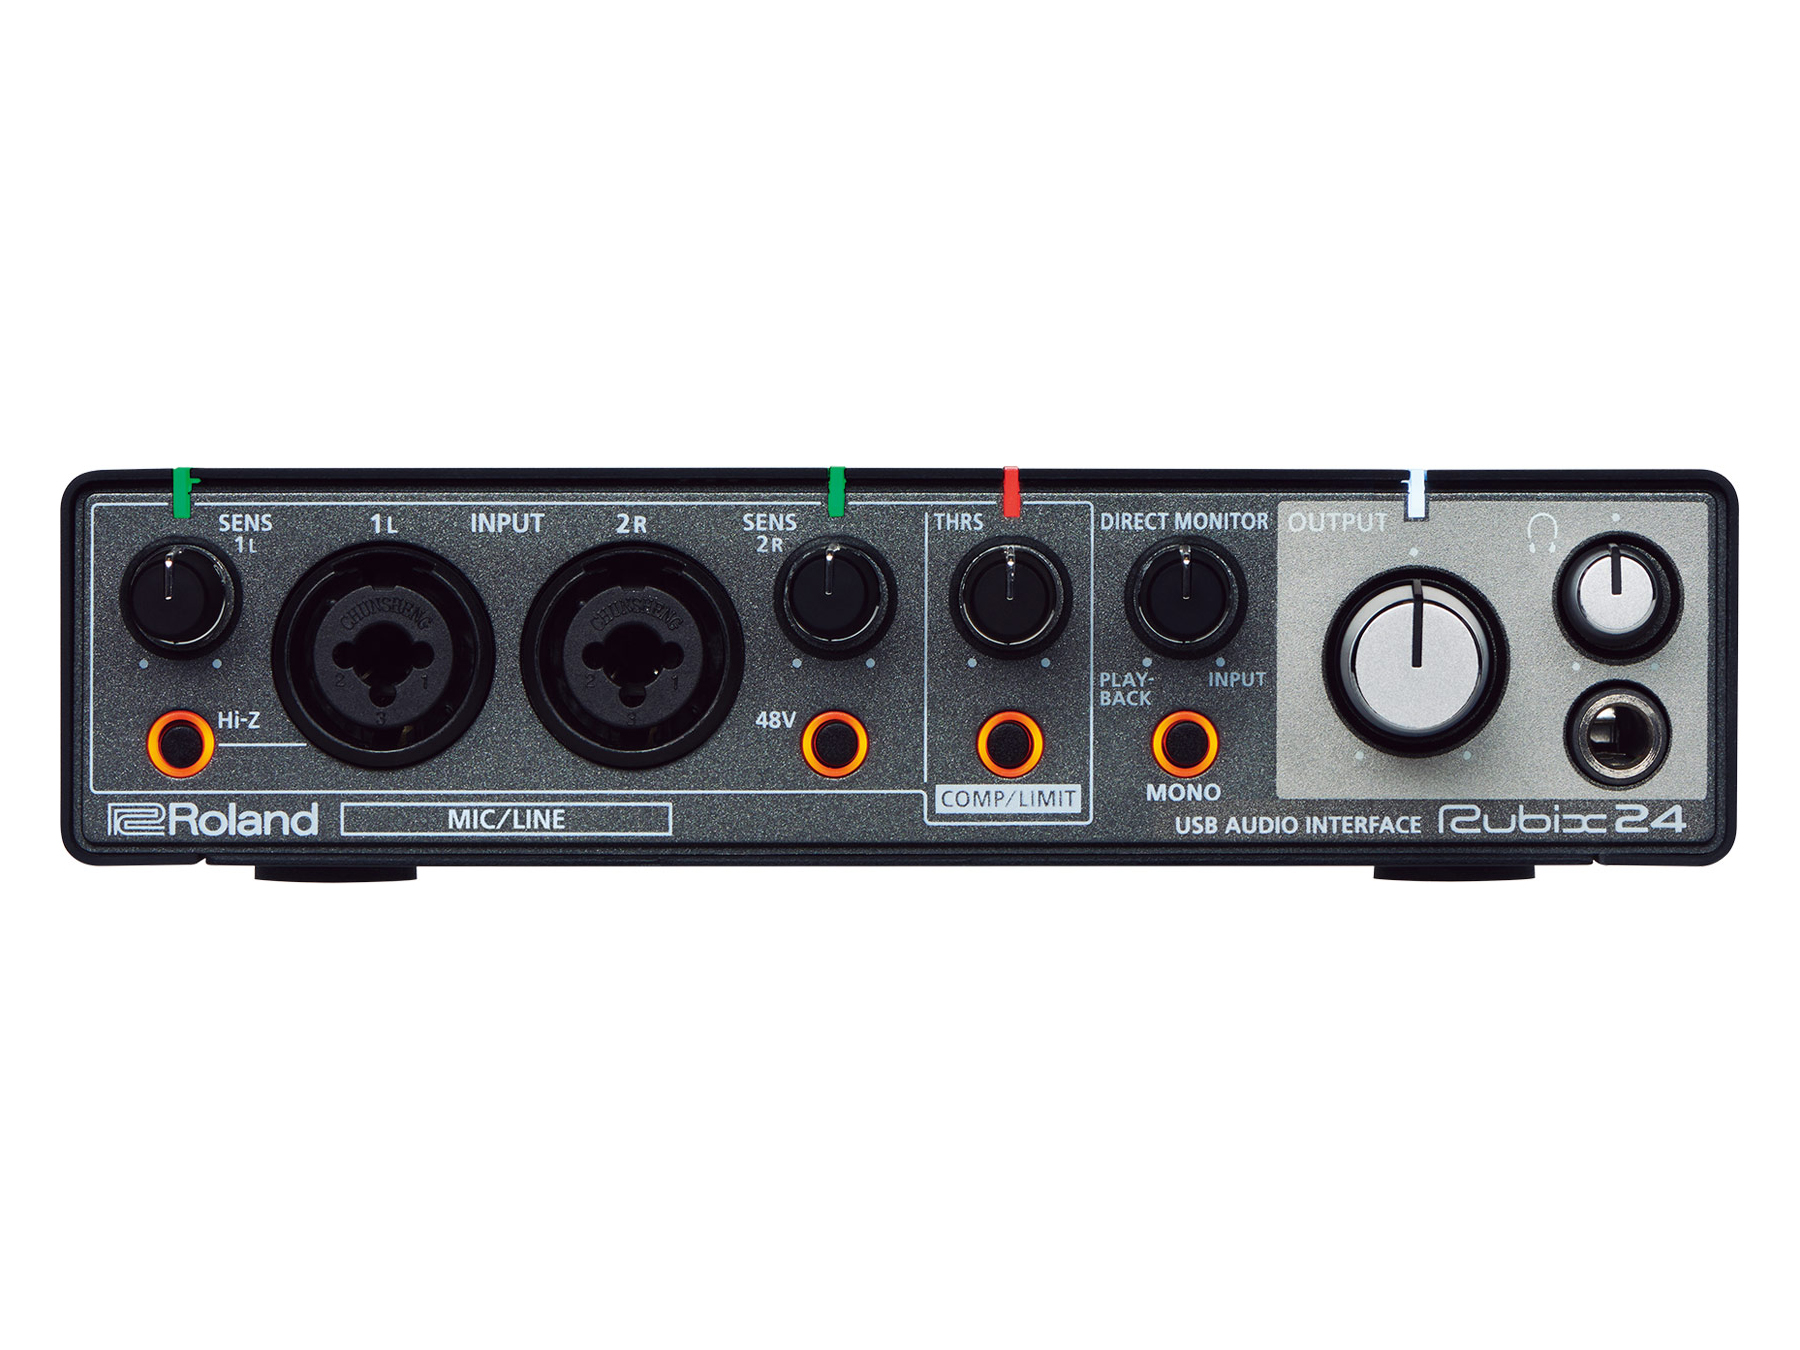 RUBIX24 2x4 USB Audio Interface by Roland